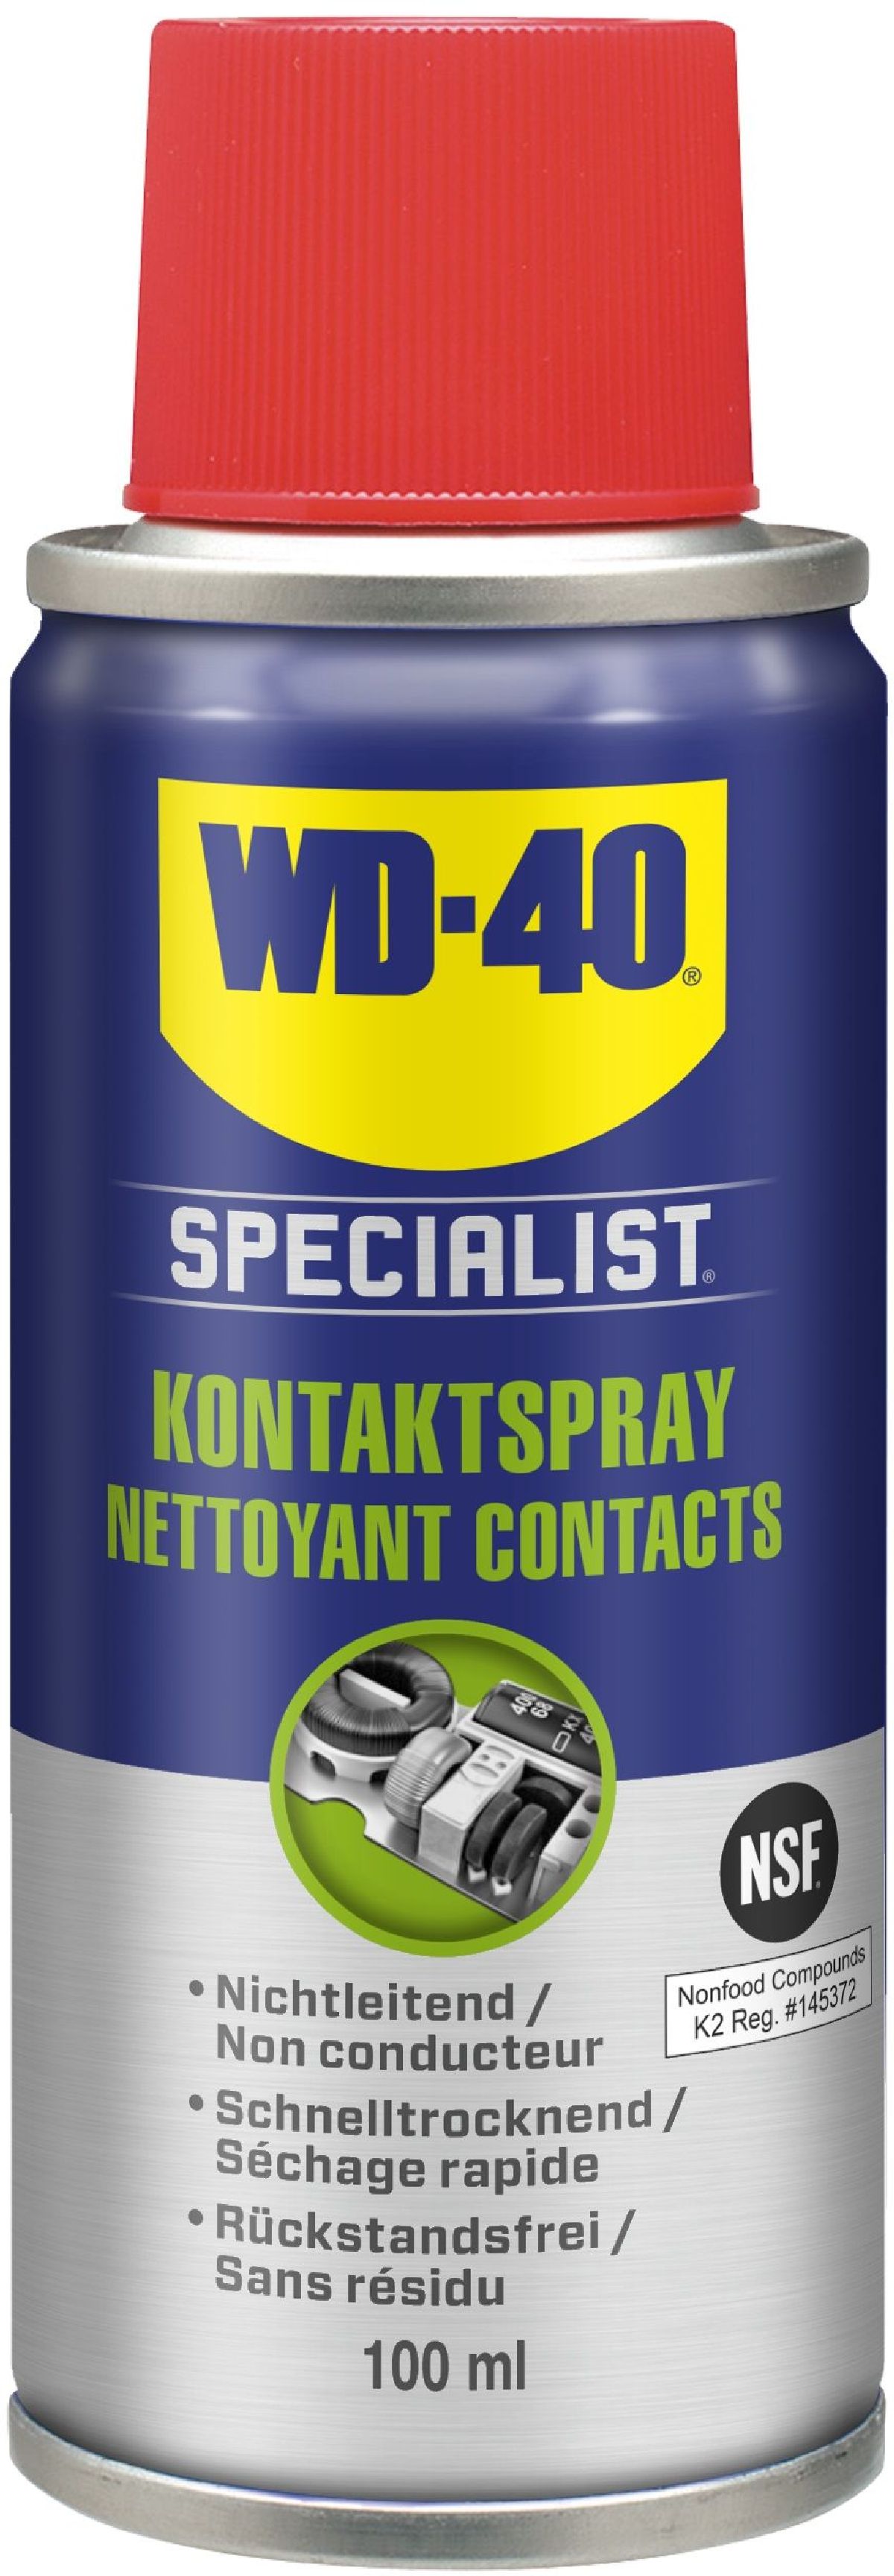 Gesamtsortiment / Schmiermittel - WD-40 Specialist Chemie + Shop - + / WD-40 AG / Krautli Specialist WD-40 / (Schweiz) Handpflege